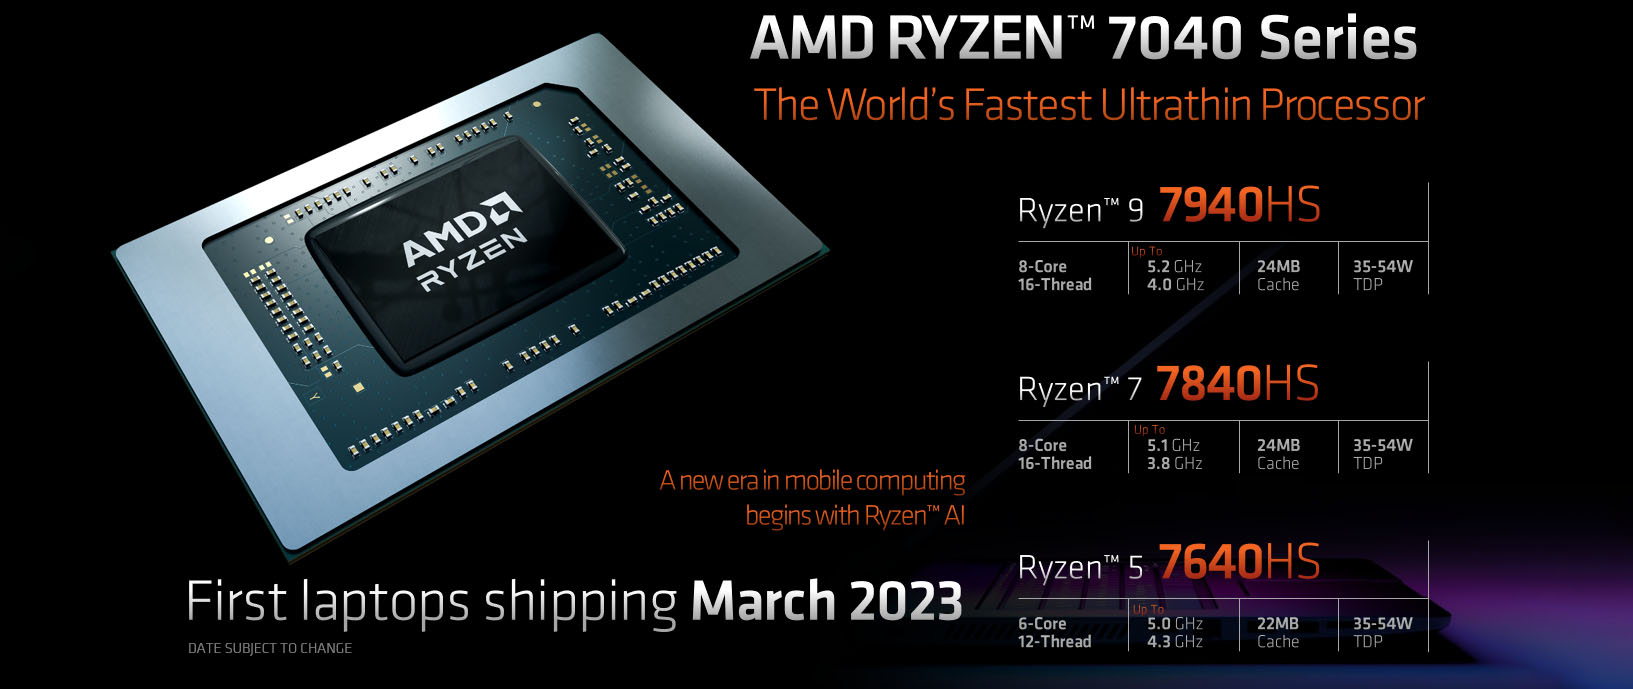 AMD-RYZEN-7040-SPECS.jpg